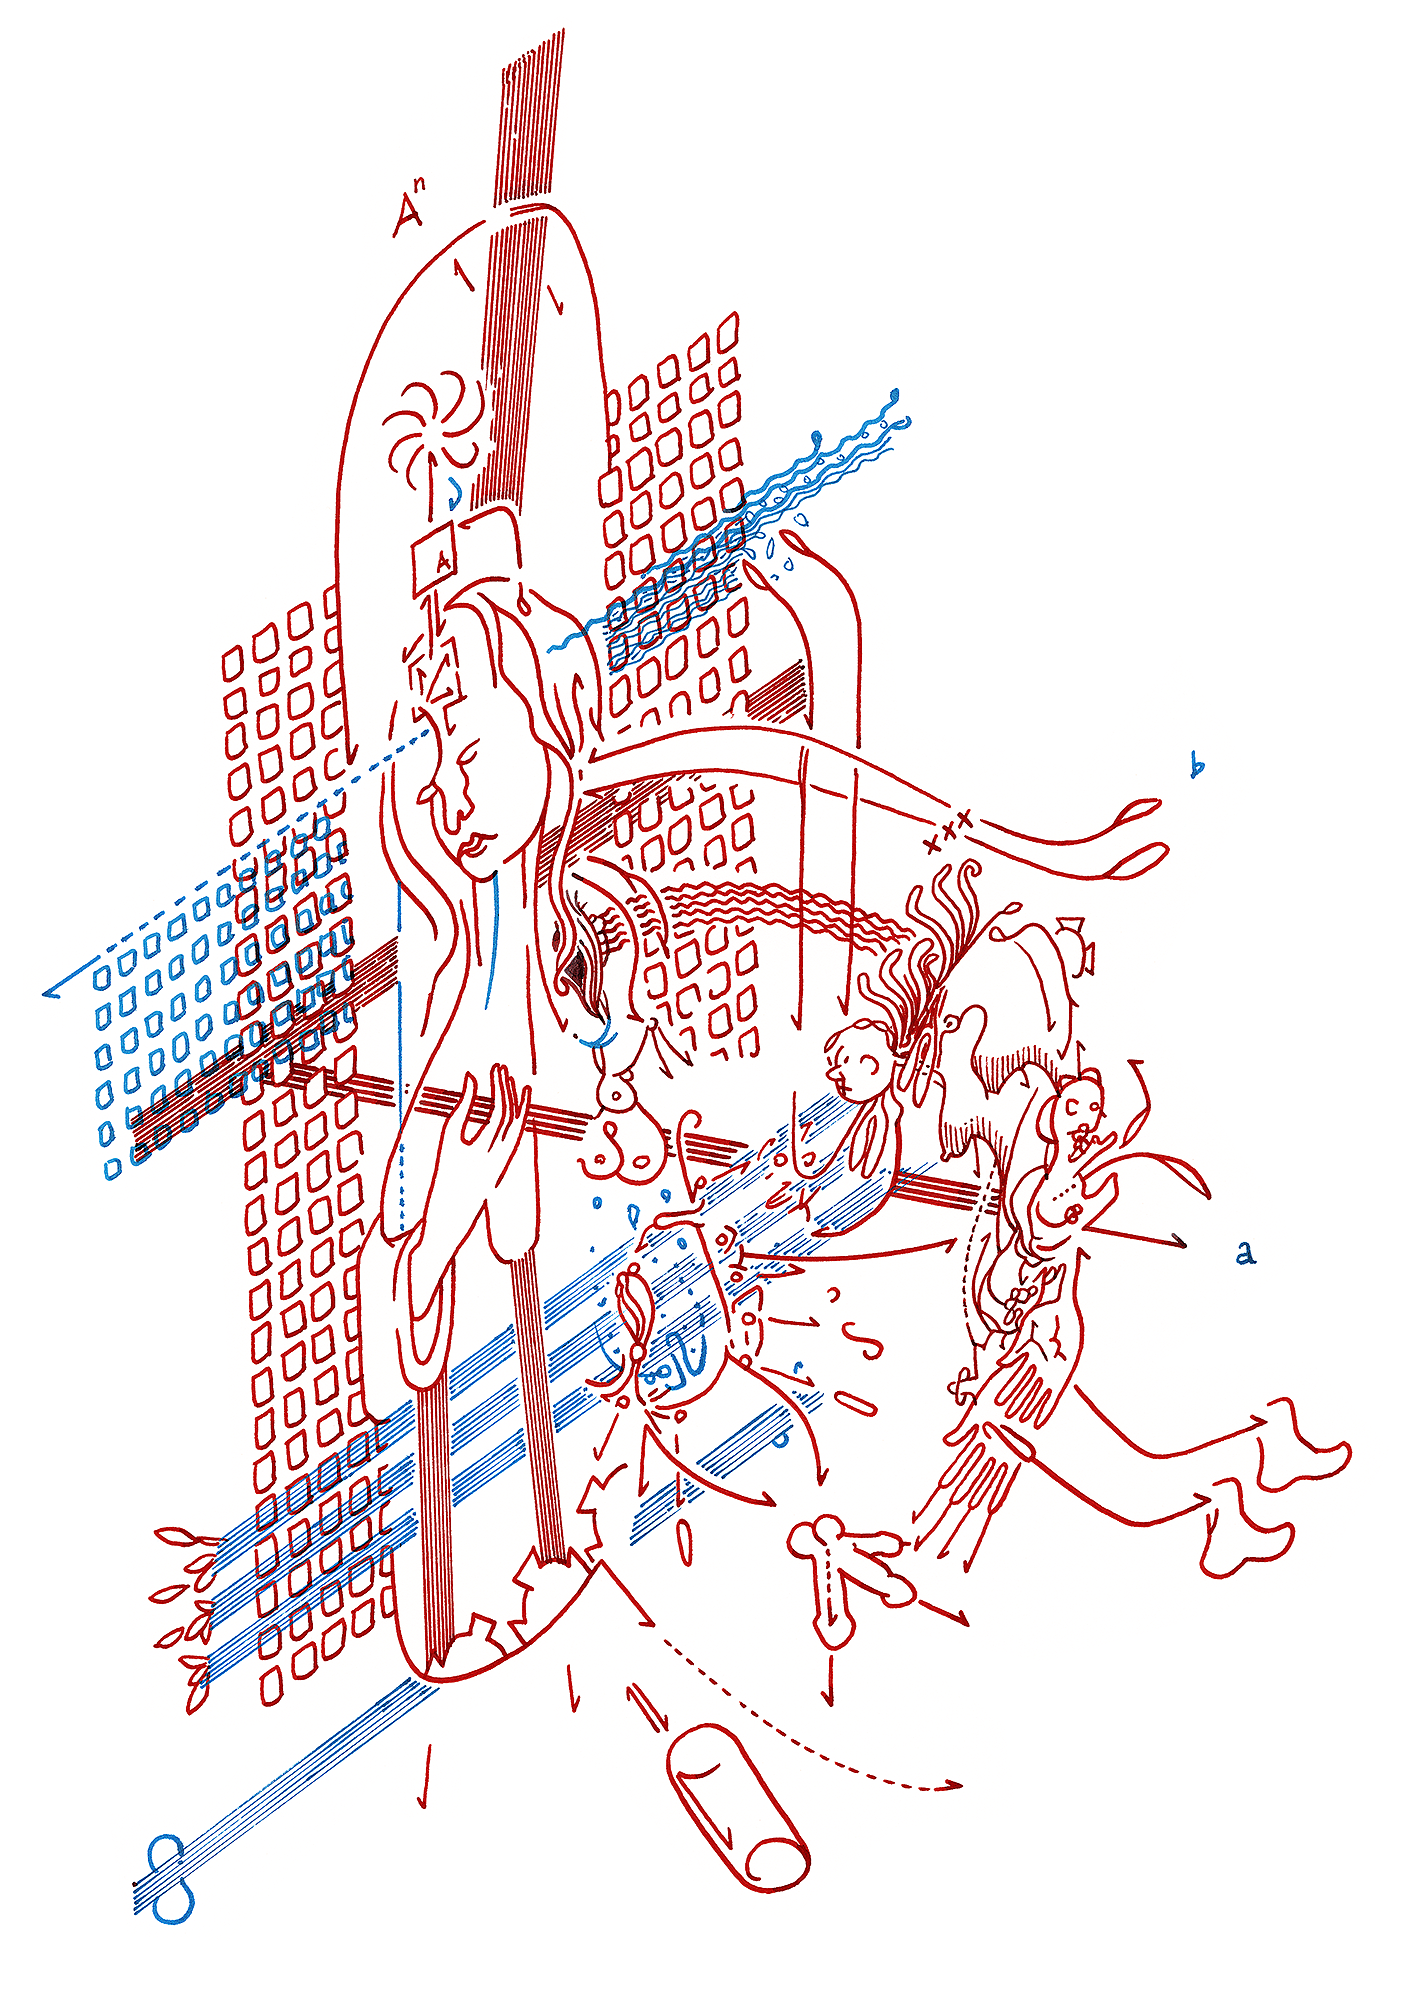 Hannes Kater: Tageszeichnung (Zeichnung/drawing) vom 27.11.2015 (1414 x 2000 Pixel)